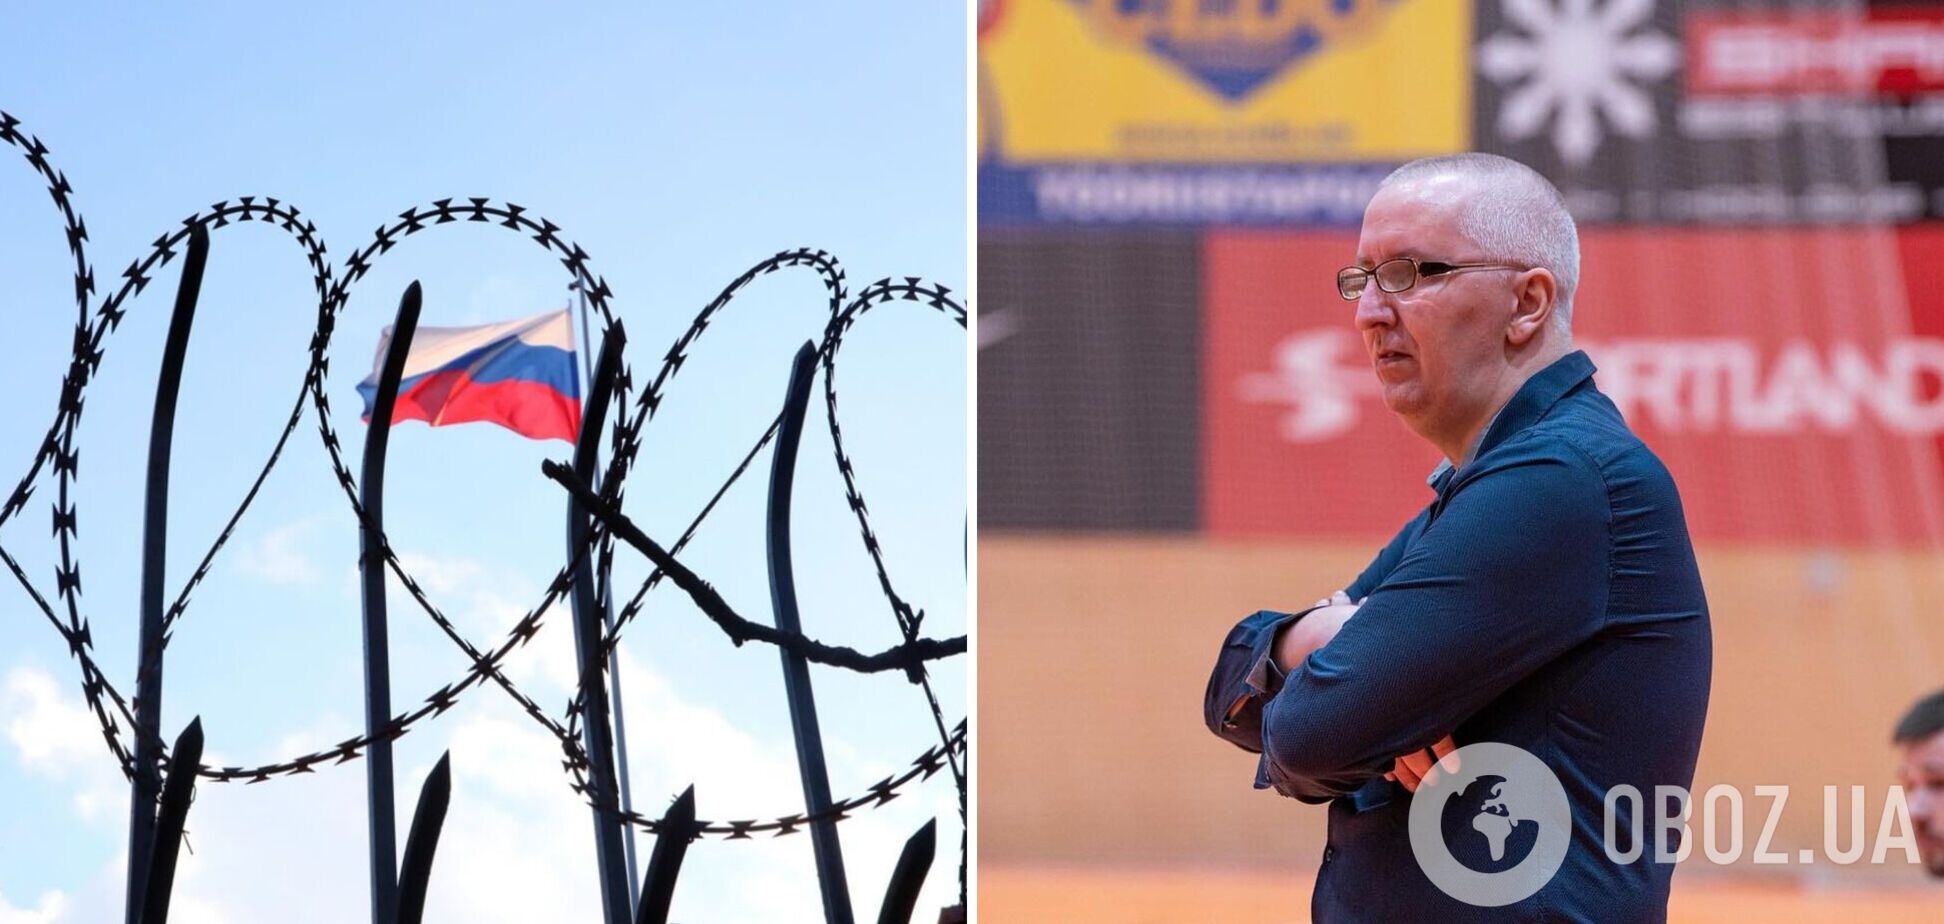 'Трудно найти работу': сербский тренер, которого выгнали из Эстонии за поддержку Путина, взмолил о помощи